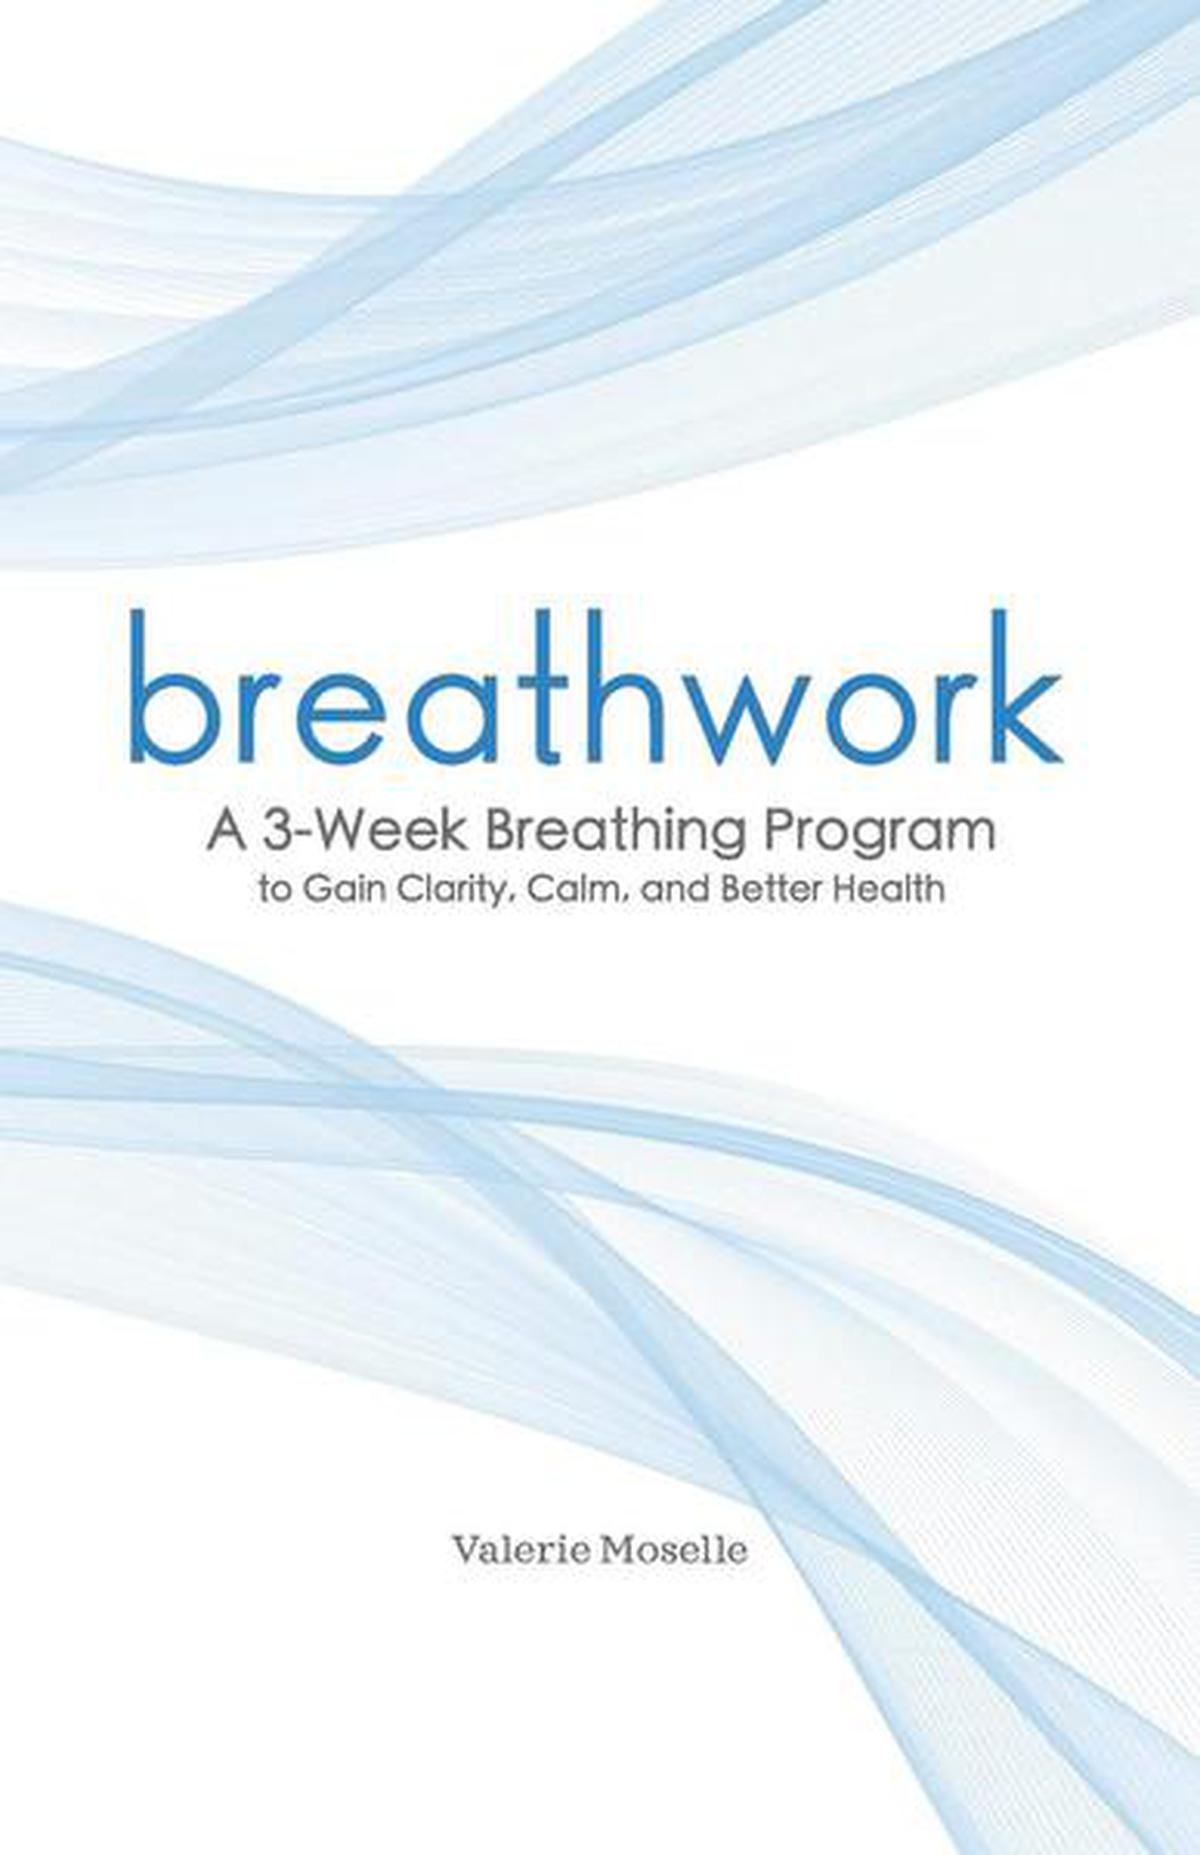 Des livres de santé qui nous aident à respirer, à manger, à bien vivre